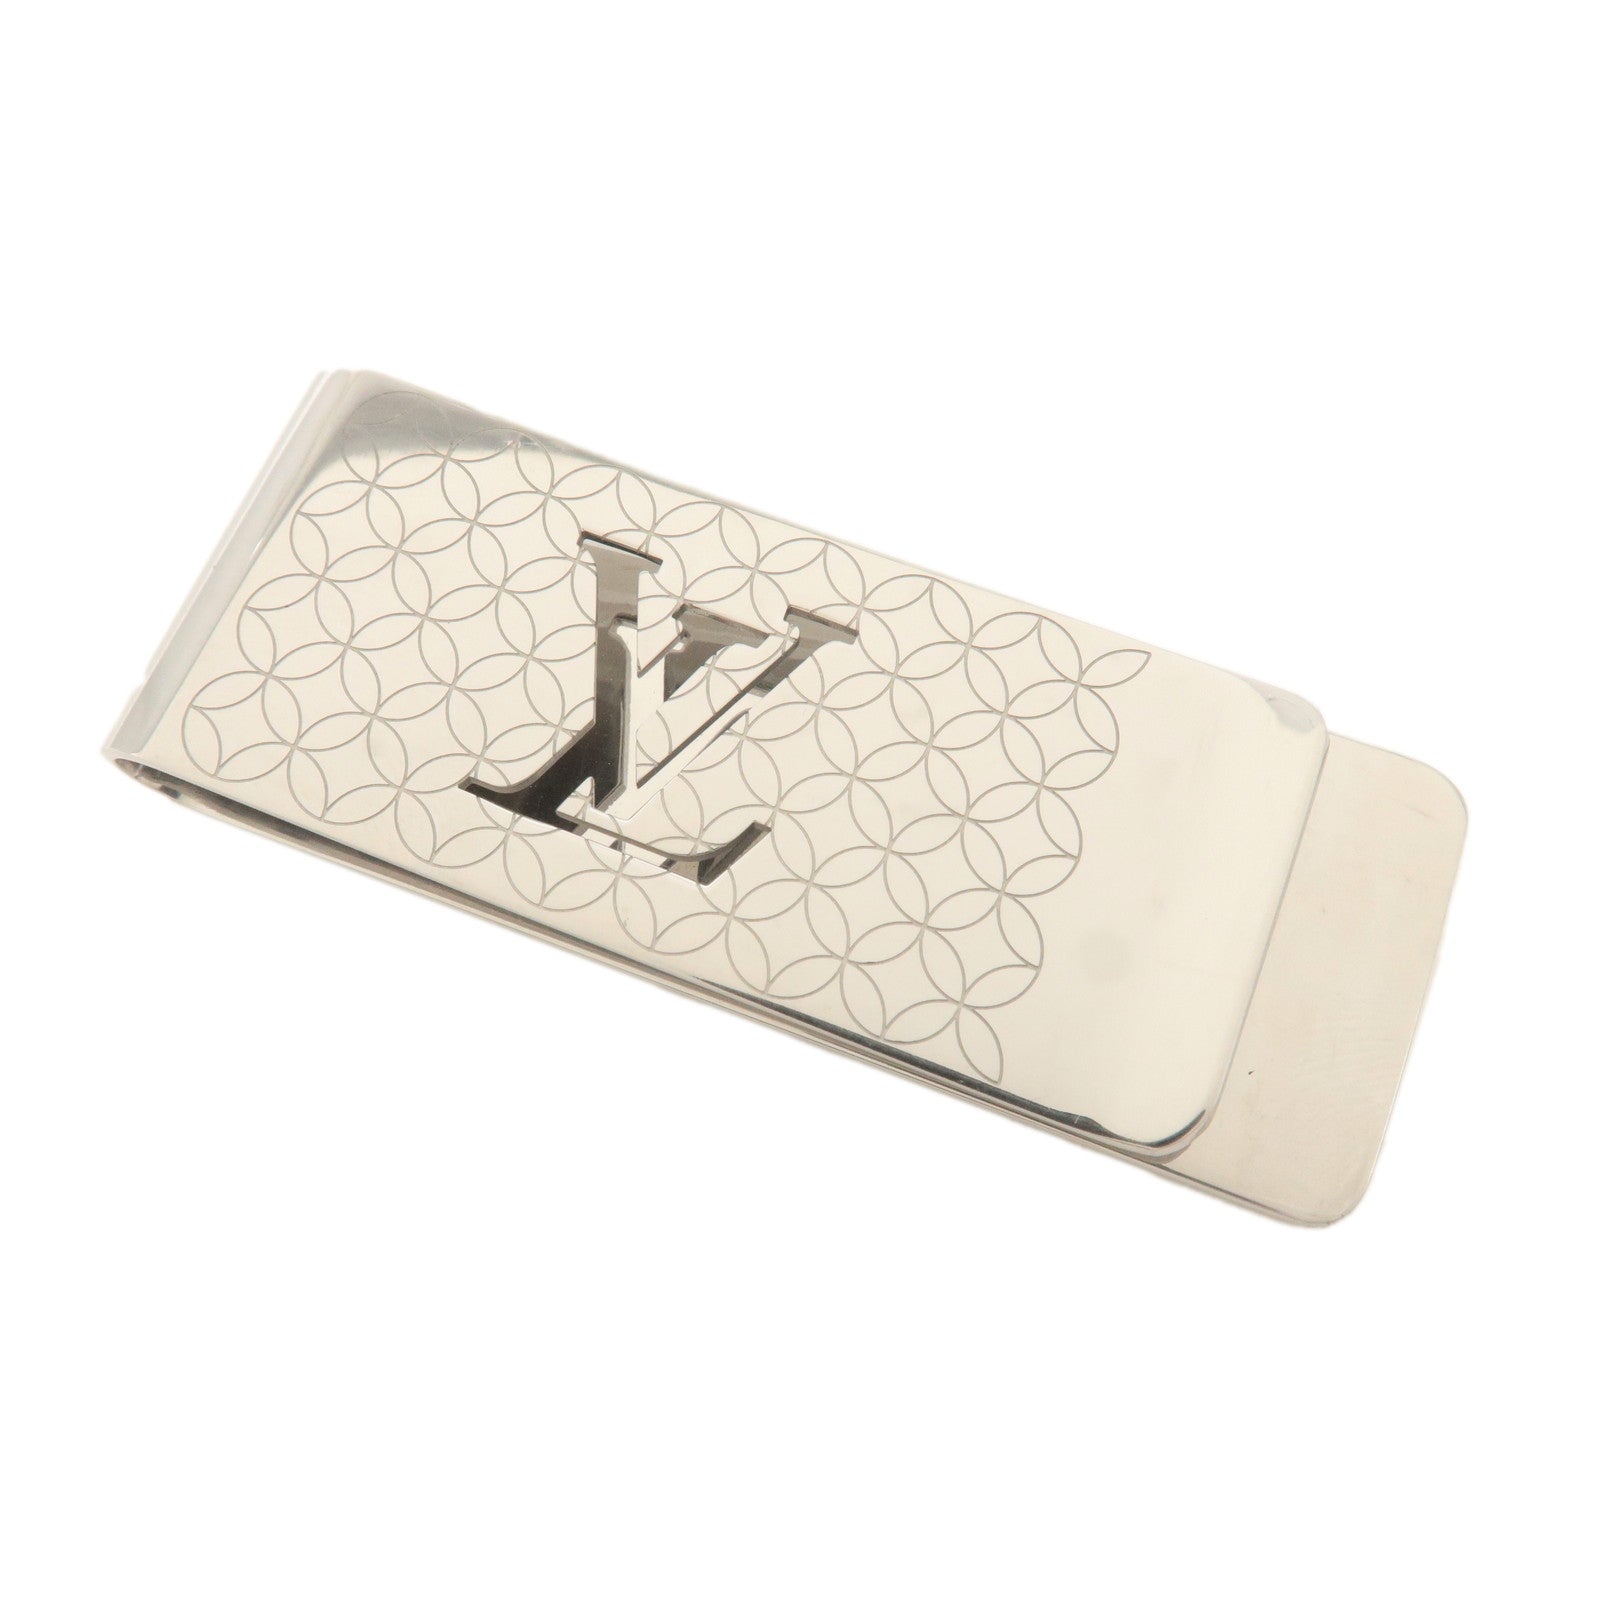 Louis-Vuitton-Pince-Billets-Champselysees-Money-Clip-Silver-M65041